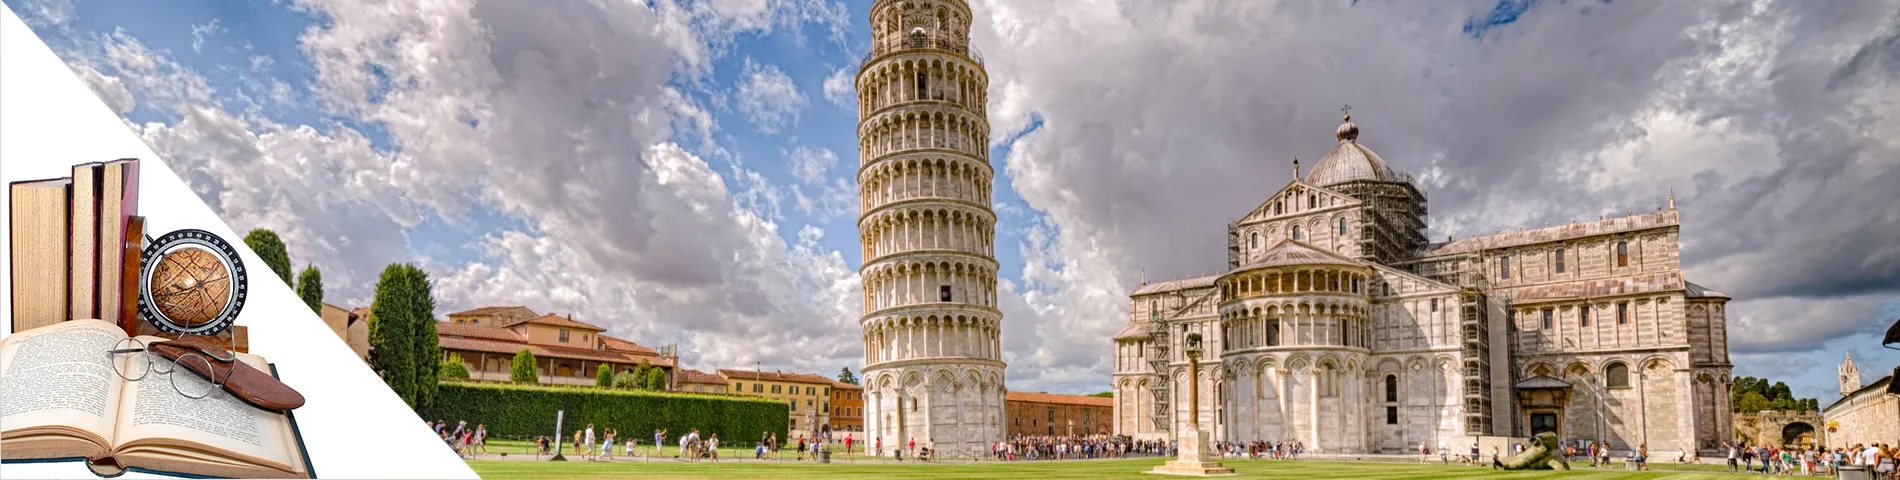 Pisa - Italian & Arts & Literature